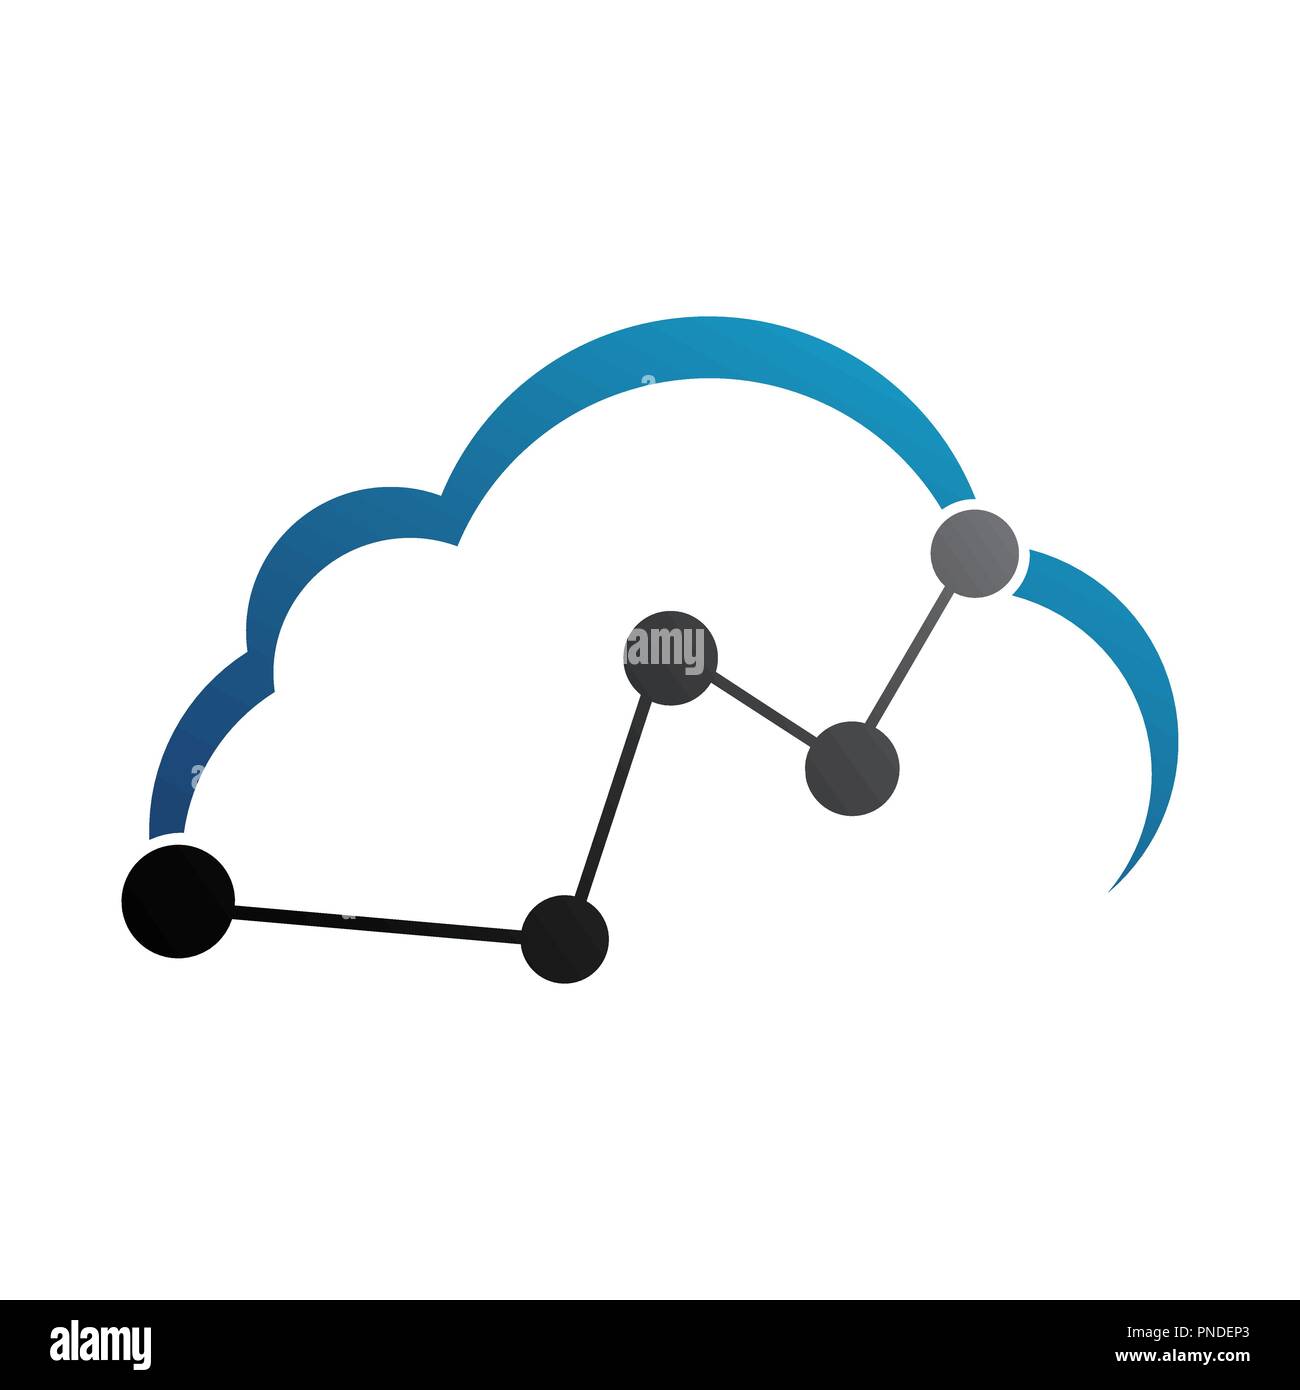 Icono de línea delgada con diseño plano elemento de cloud computing internet hosting tecnología de conexión de enlace de datos Ilustración del Vector